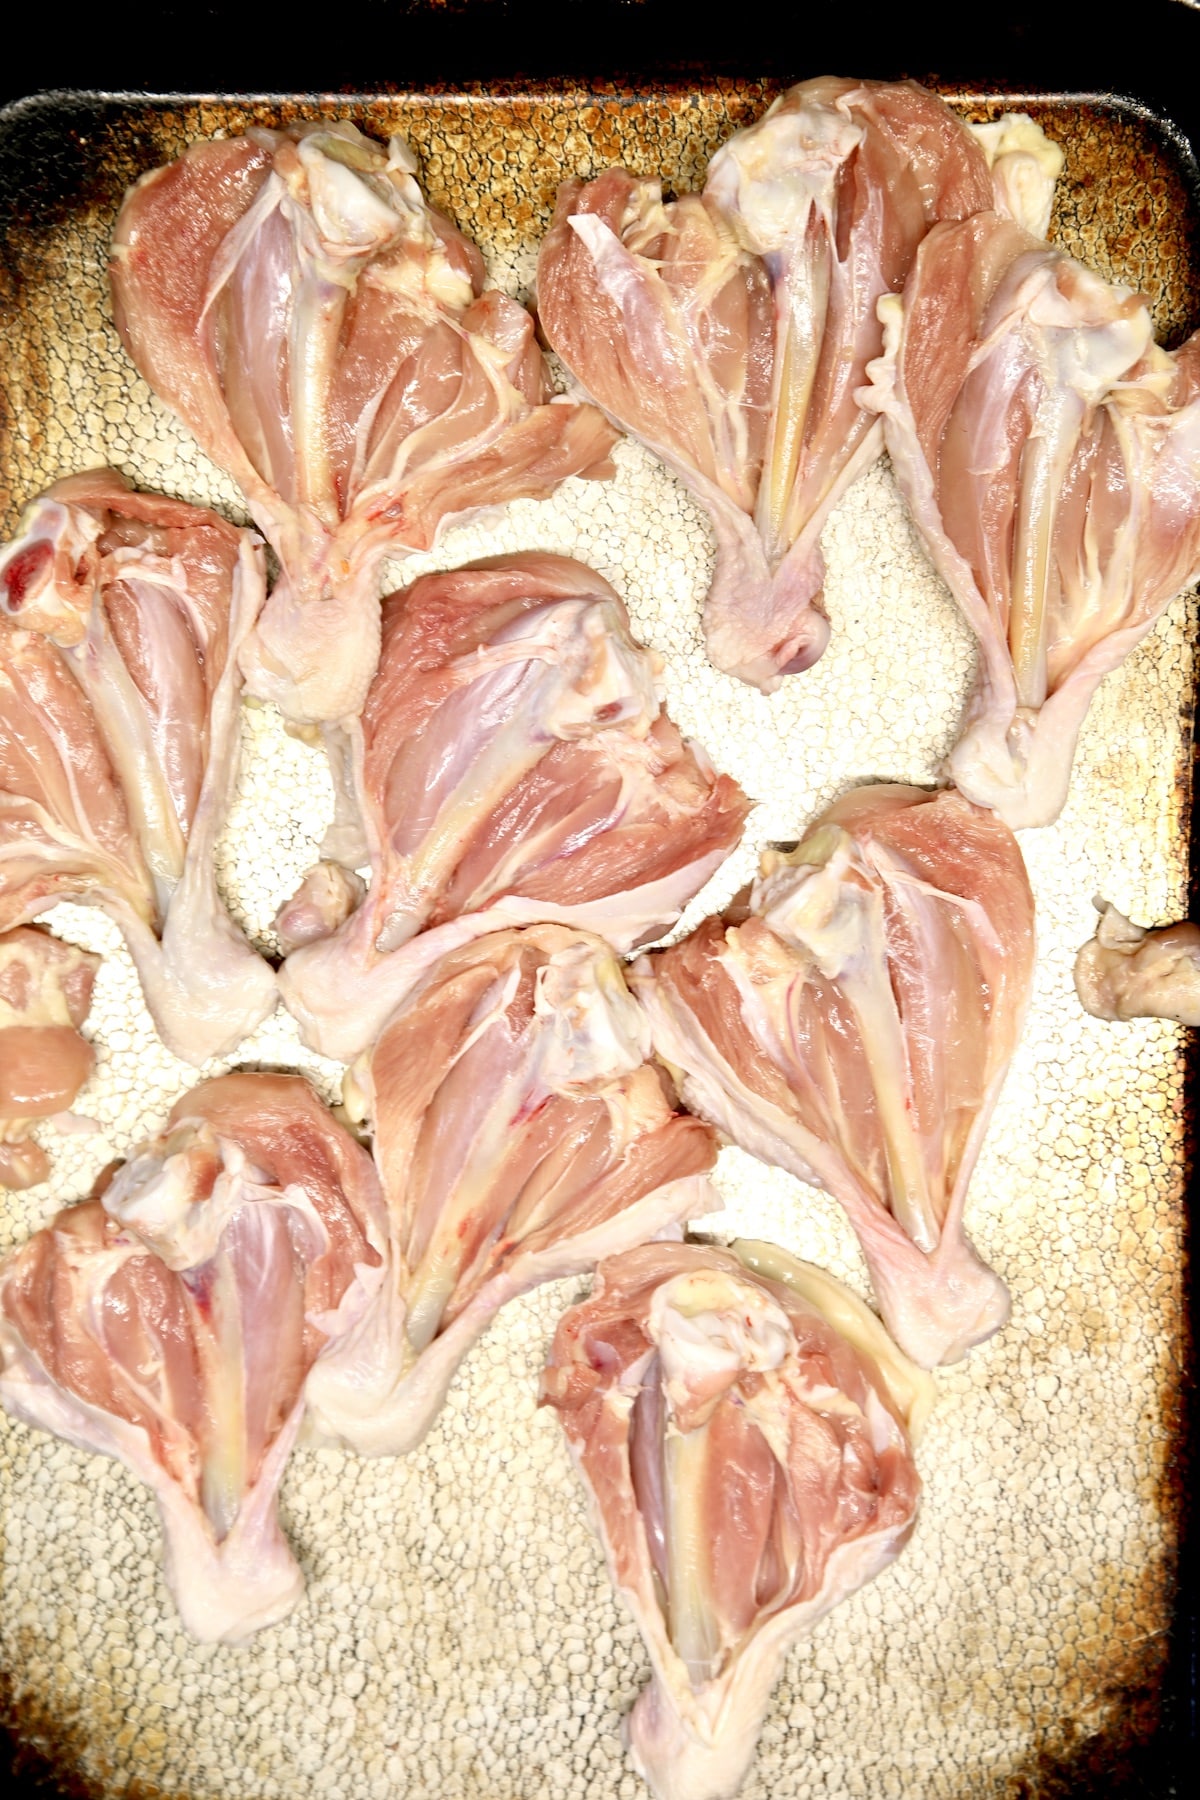 Raw butterflied chicken legs on a sheet pan.